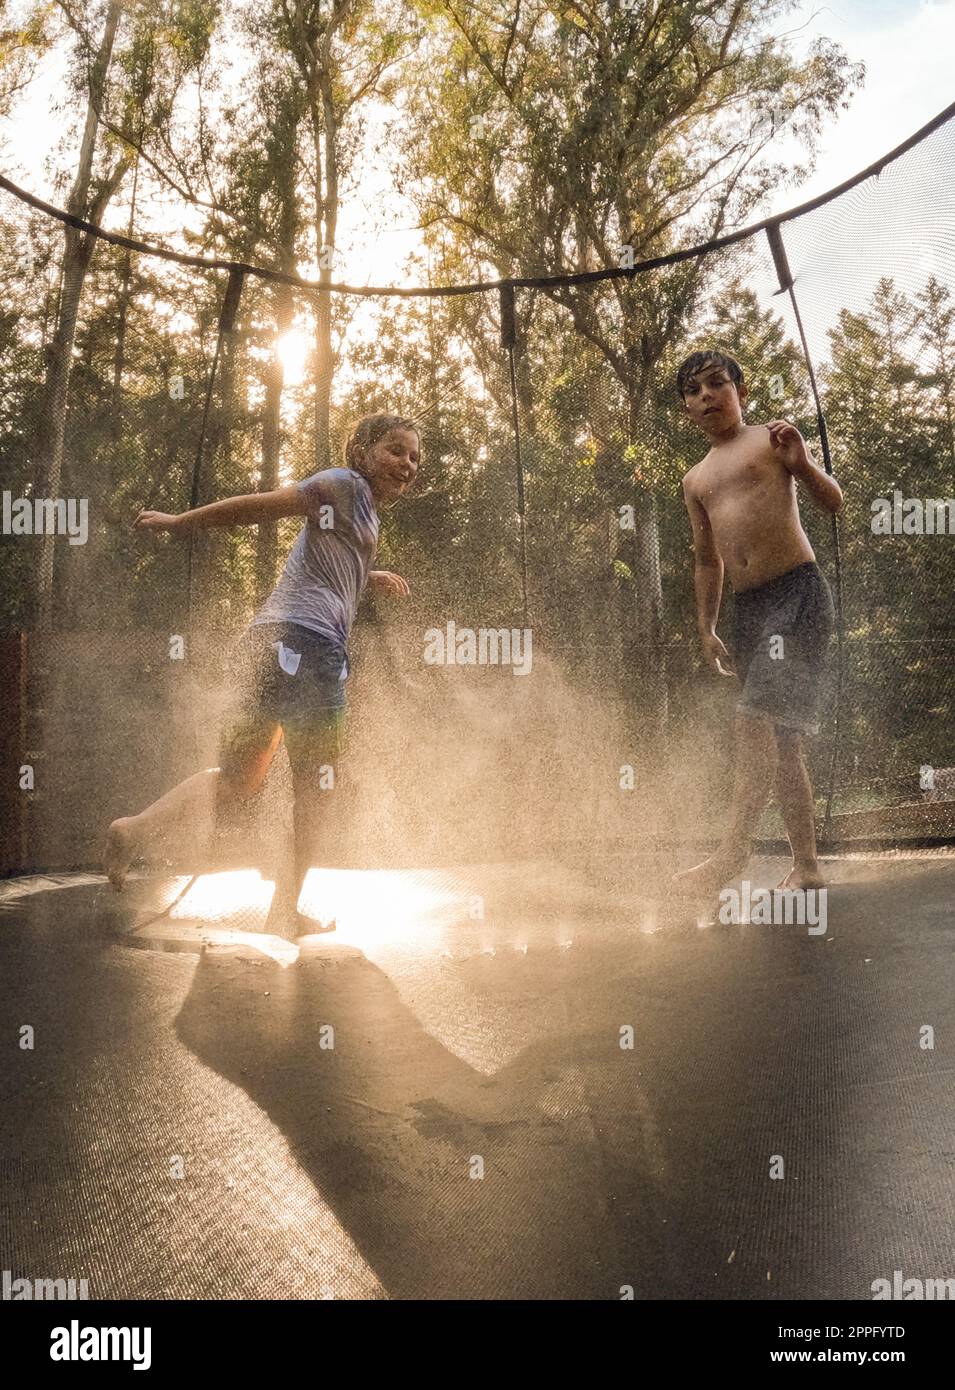 Geschwister bei Sonnenuntergang auf Trampolin mit Sprinklerwasser Stockfoto